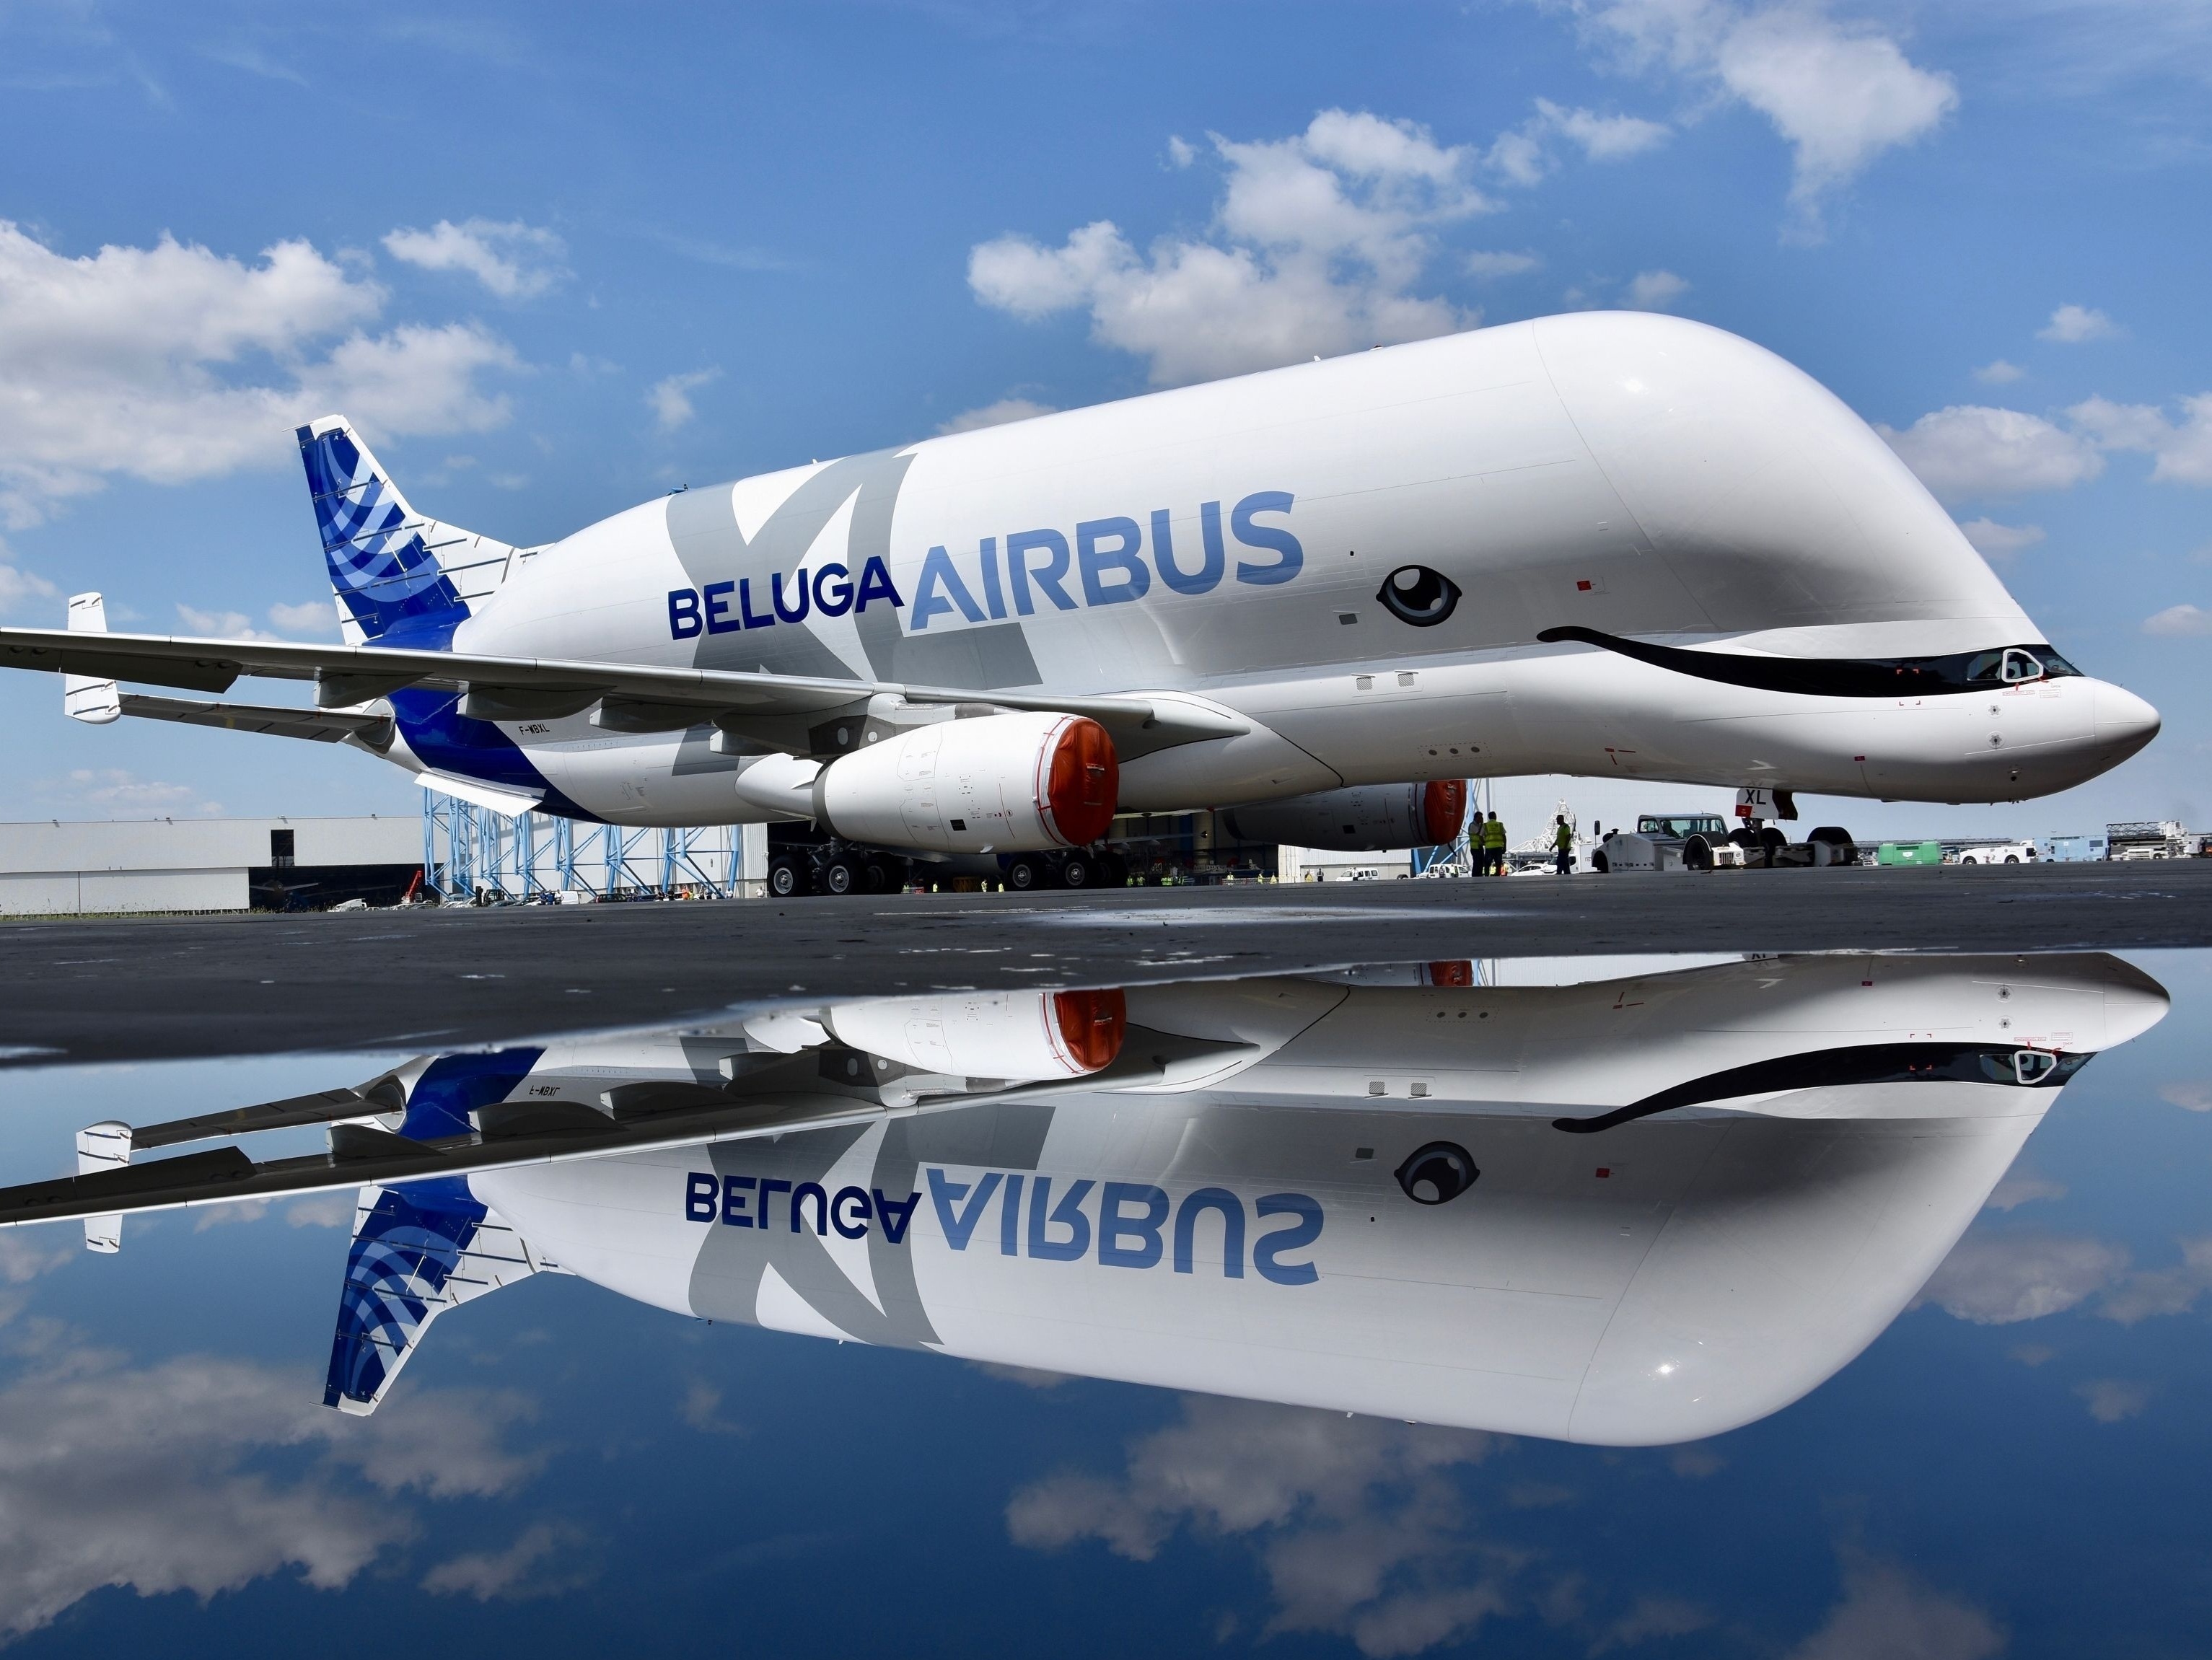 Avião ou baleia? Airbus faz primeiro voo de novo modelo da Beluga